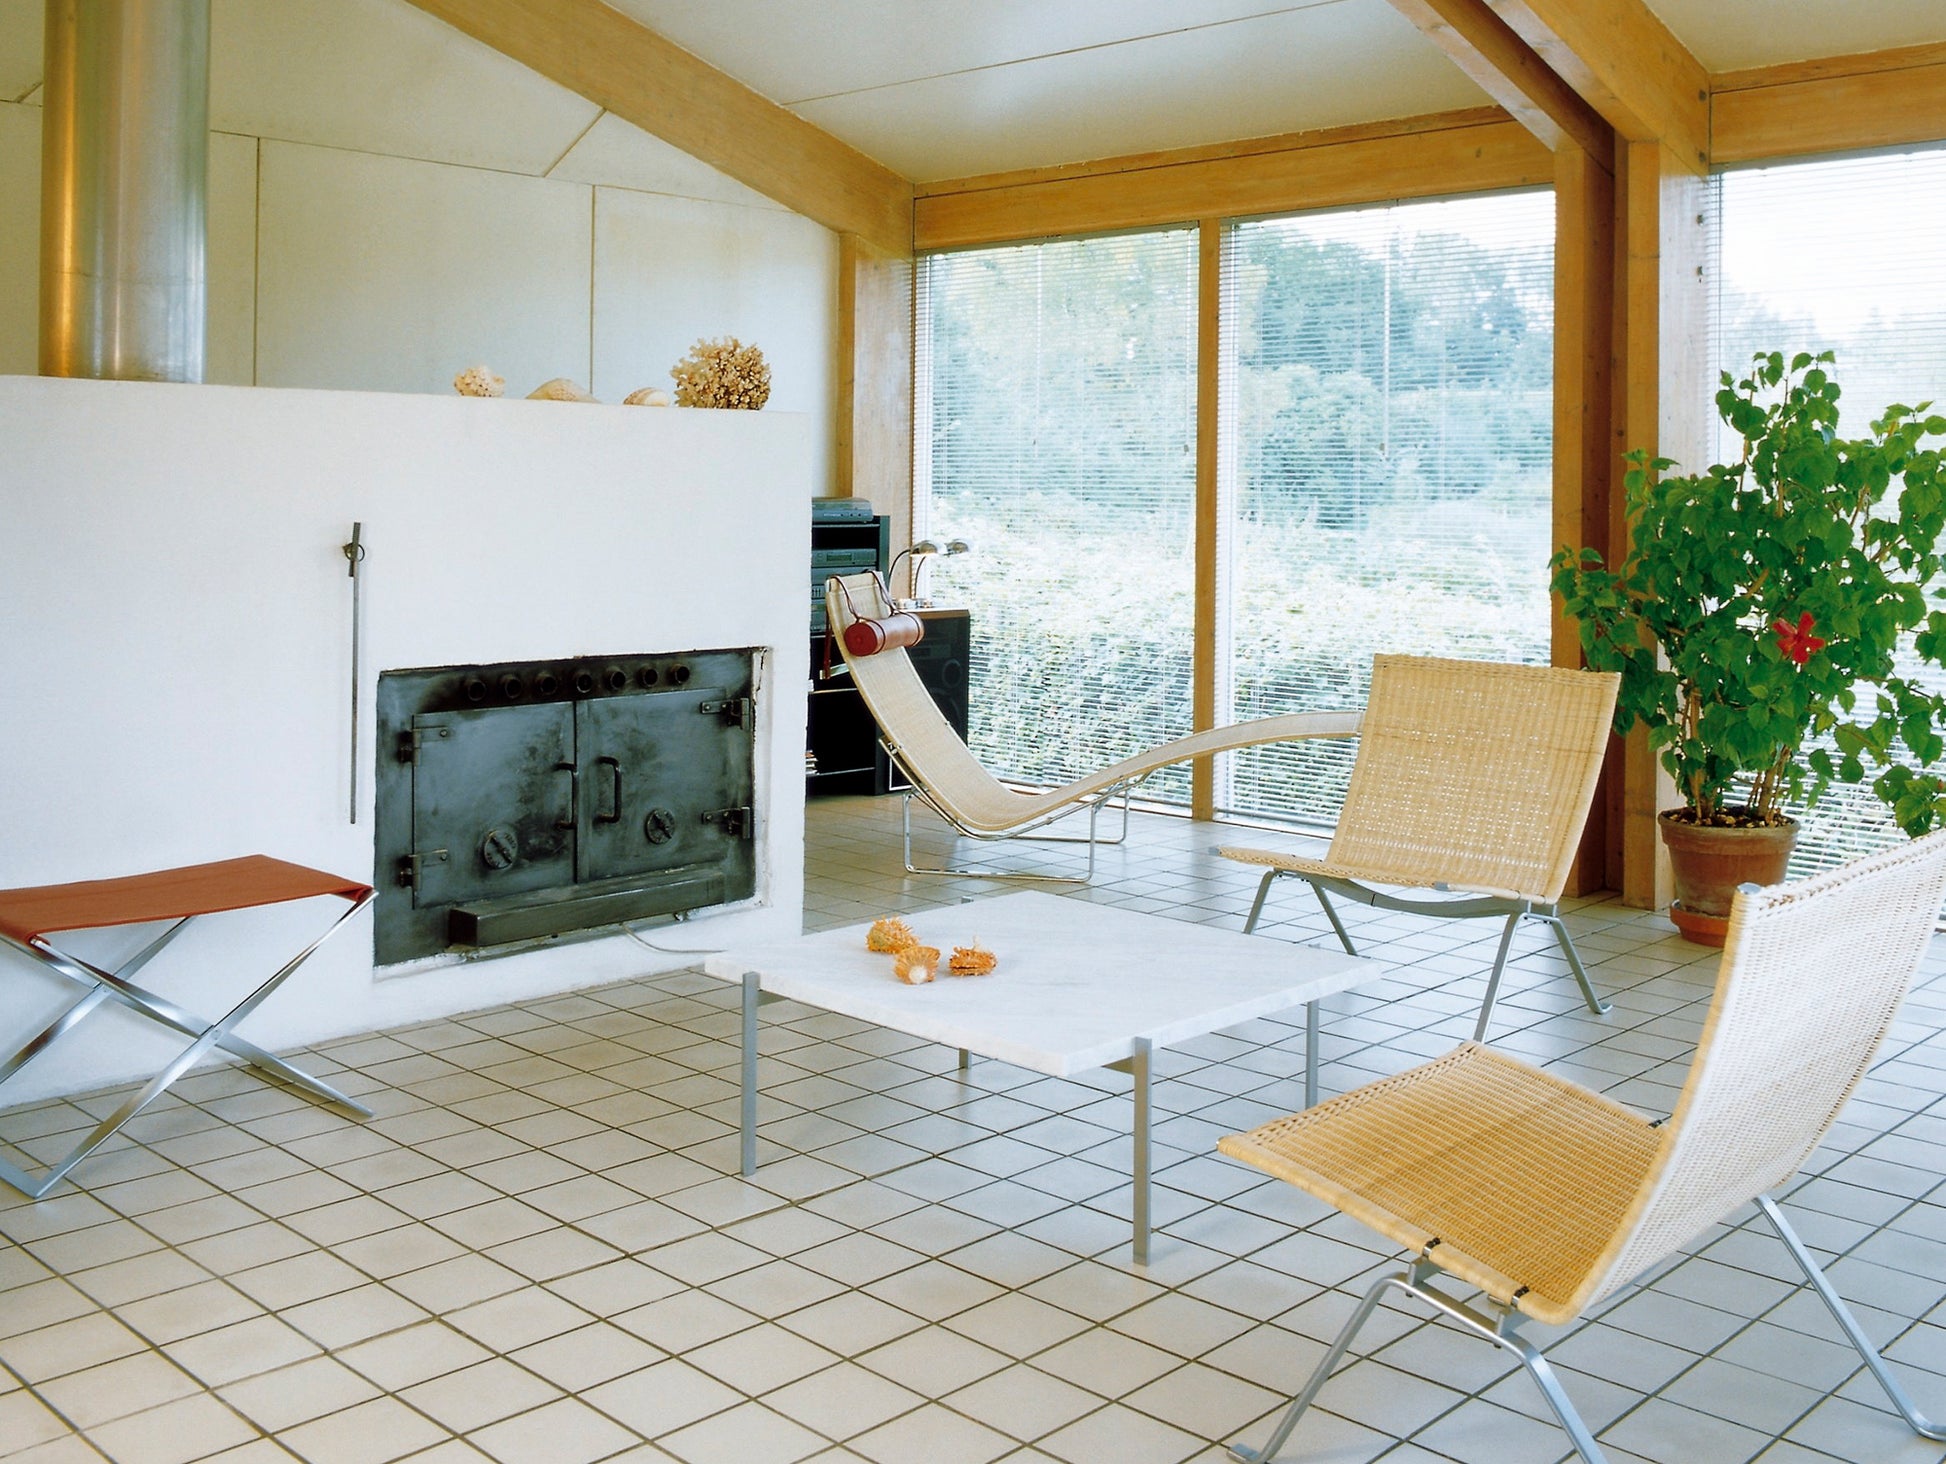 PK22 Lounge Chair - Wicker by Fritz Hansen